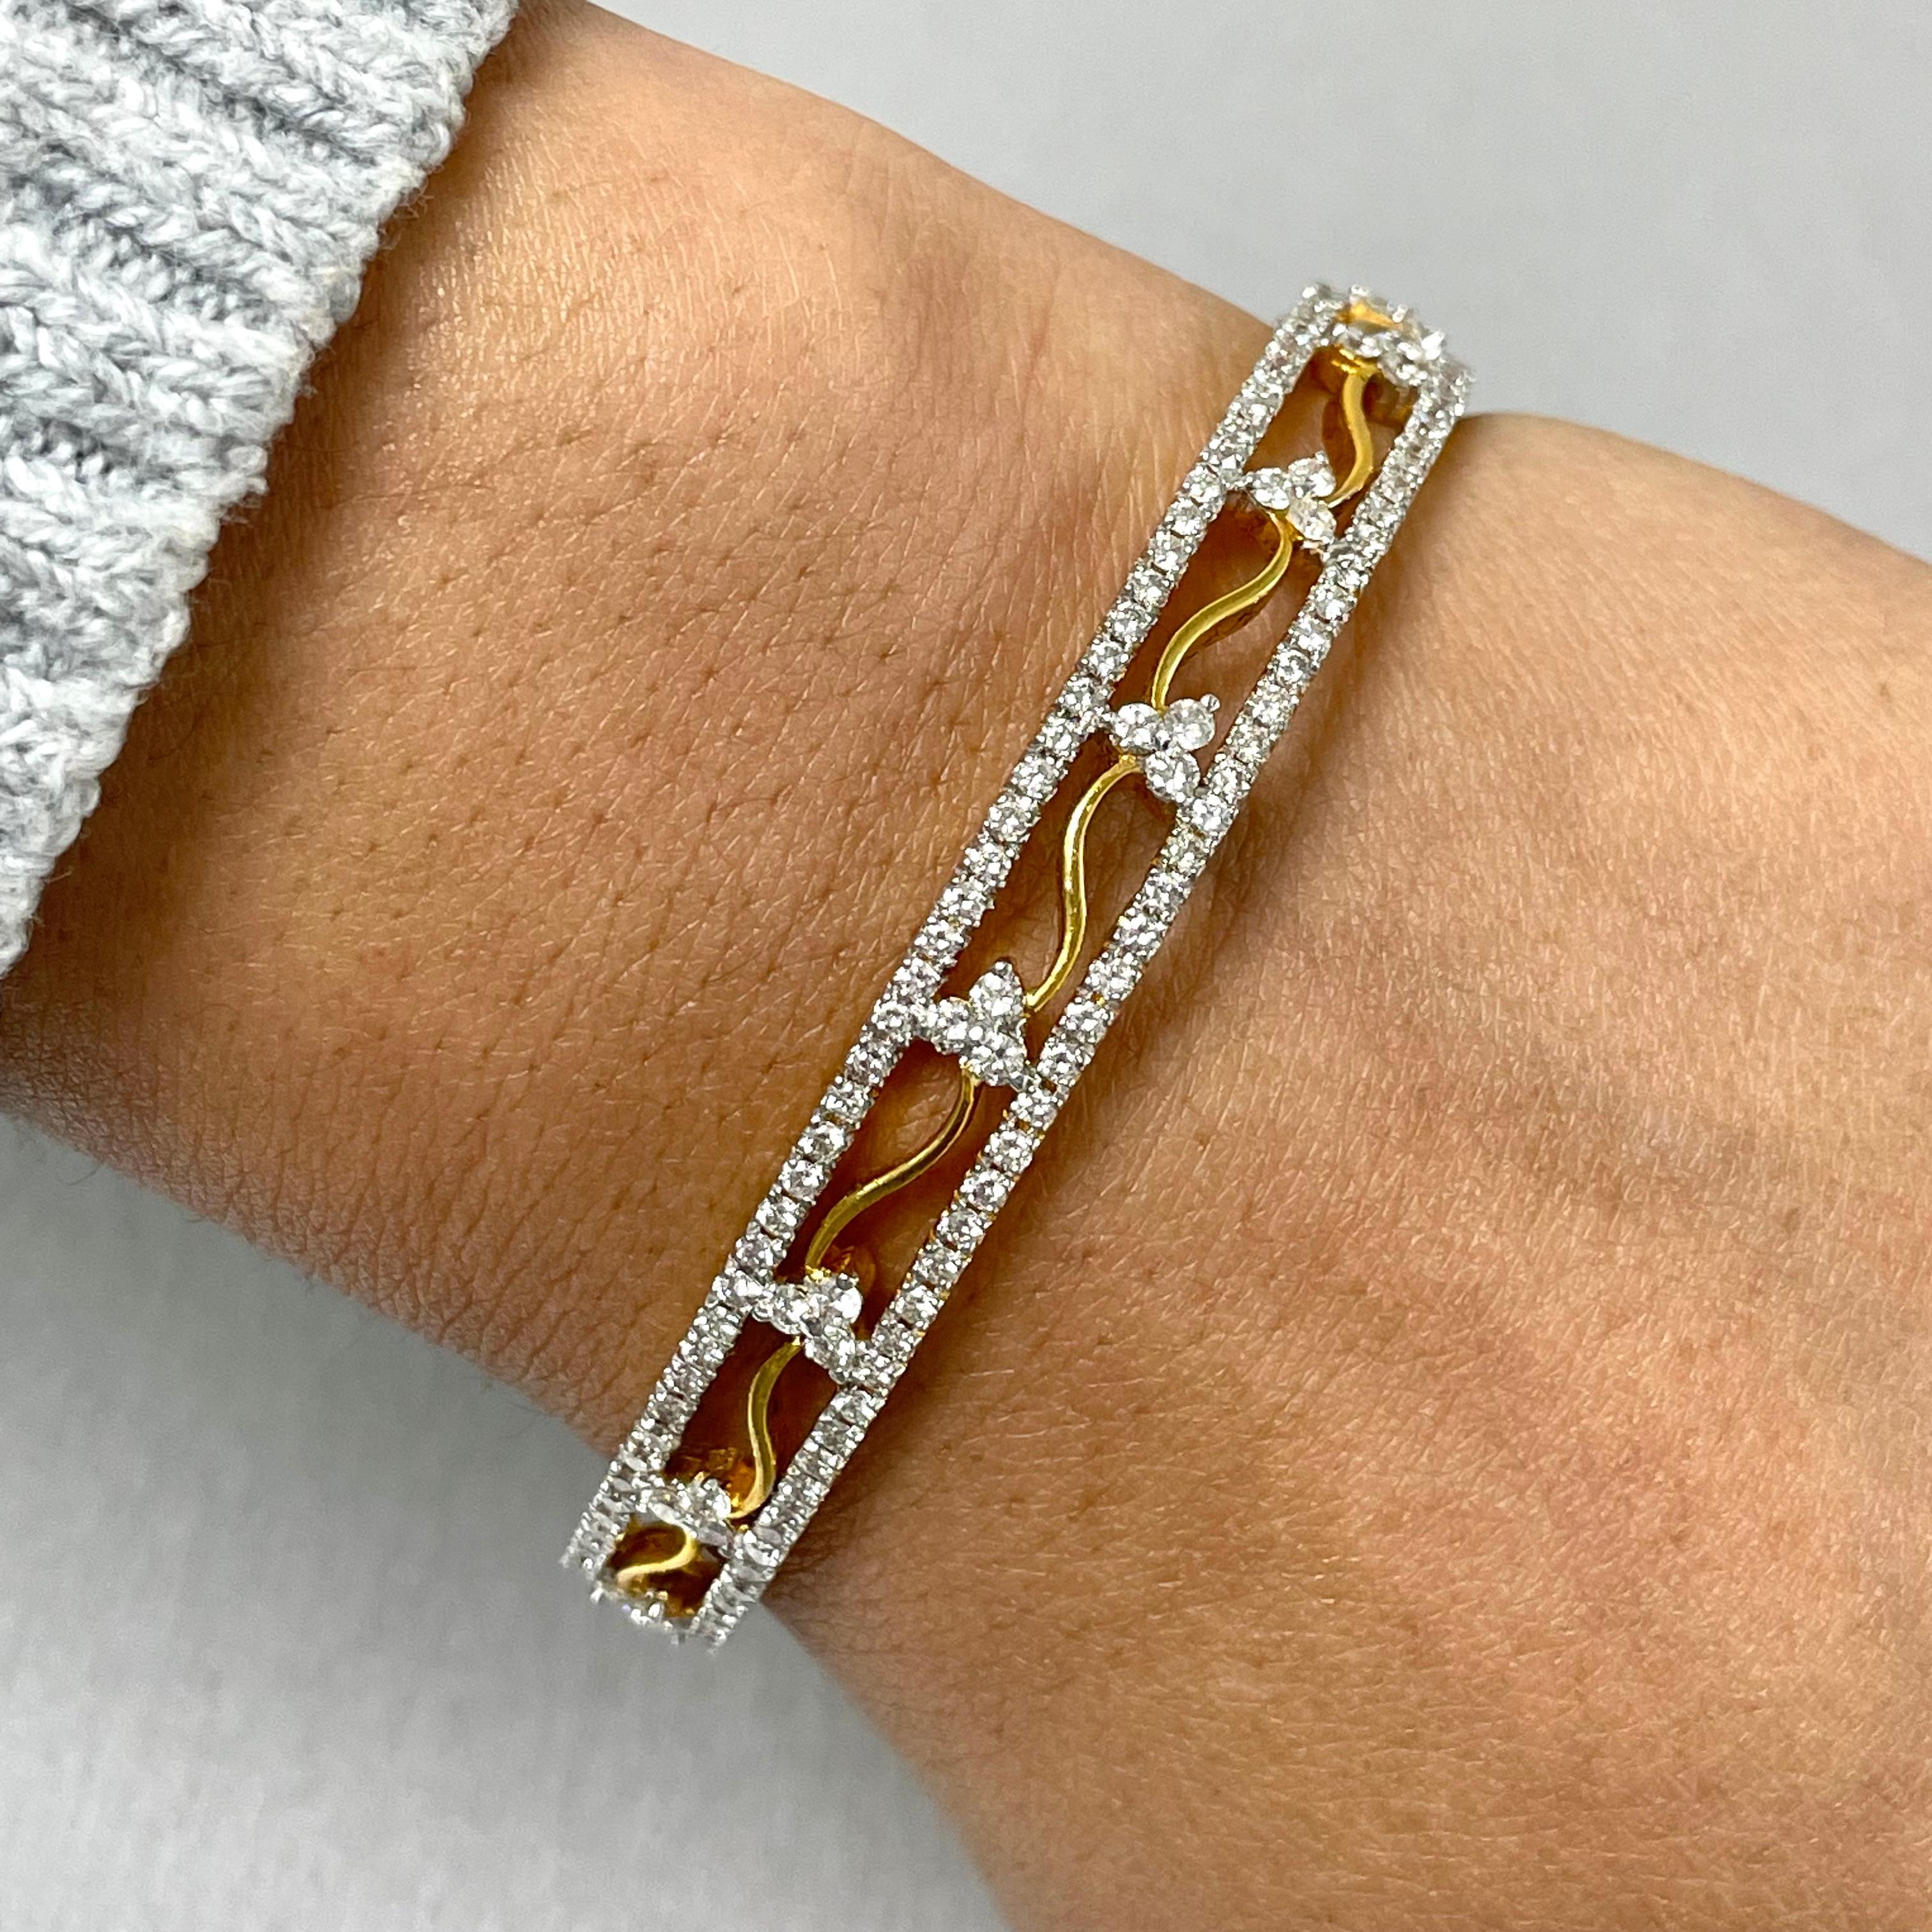 Les bracelets Sheena s'inspirent de l'héritage indien avec leurs doux détails fleuris et leurs courbes douces. Ils forment un couple doux et élégant.

Poids total des diamants : 10,59 ct 
Nombre de diamants : 552 
Couleur du diamant : G - H
Clarté